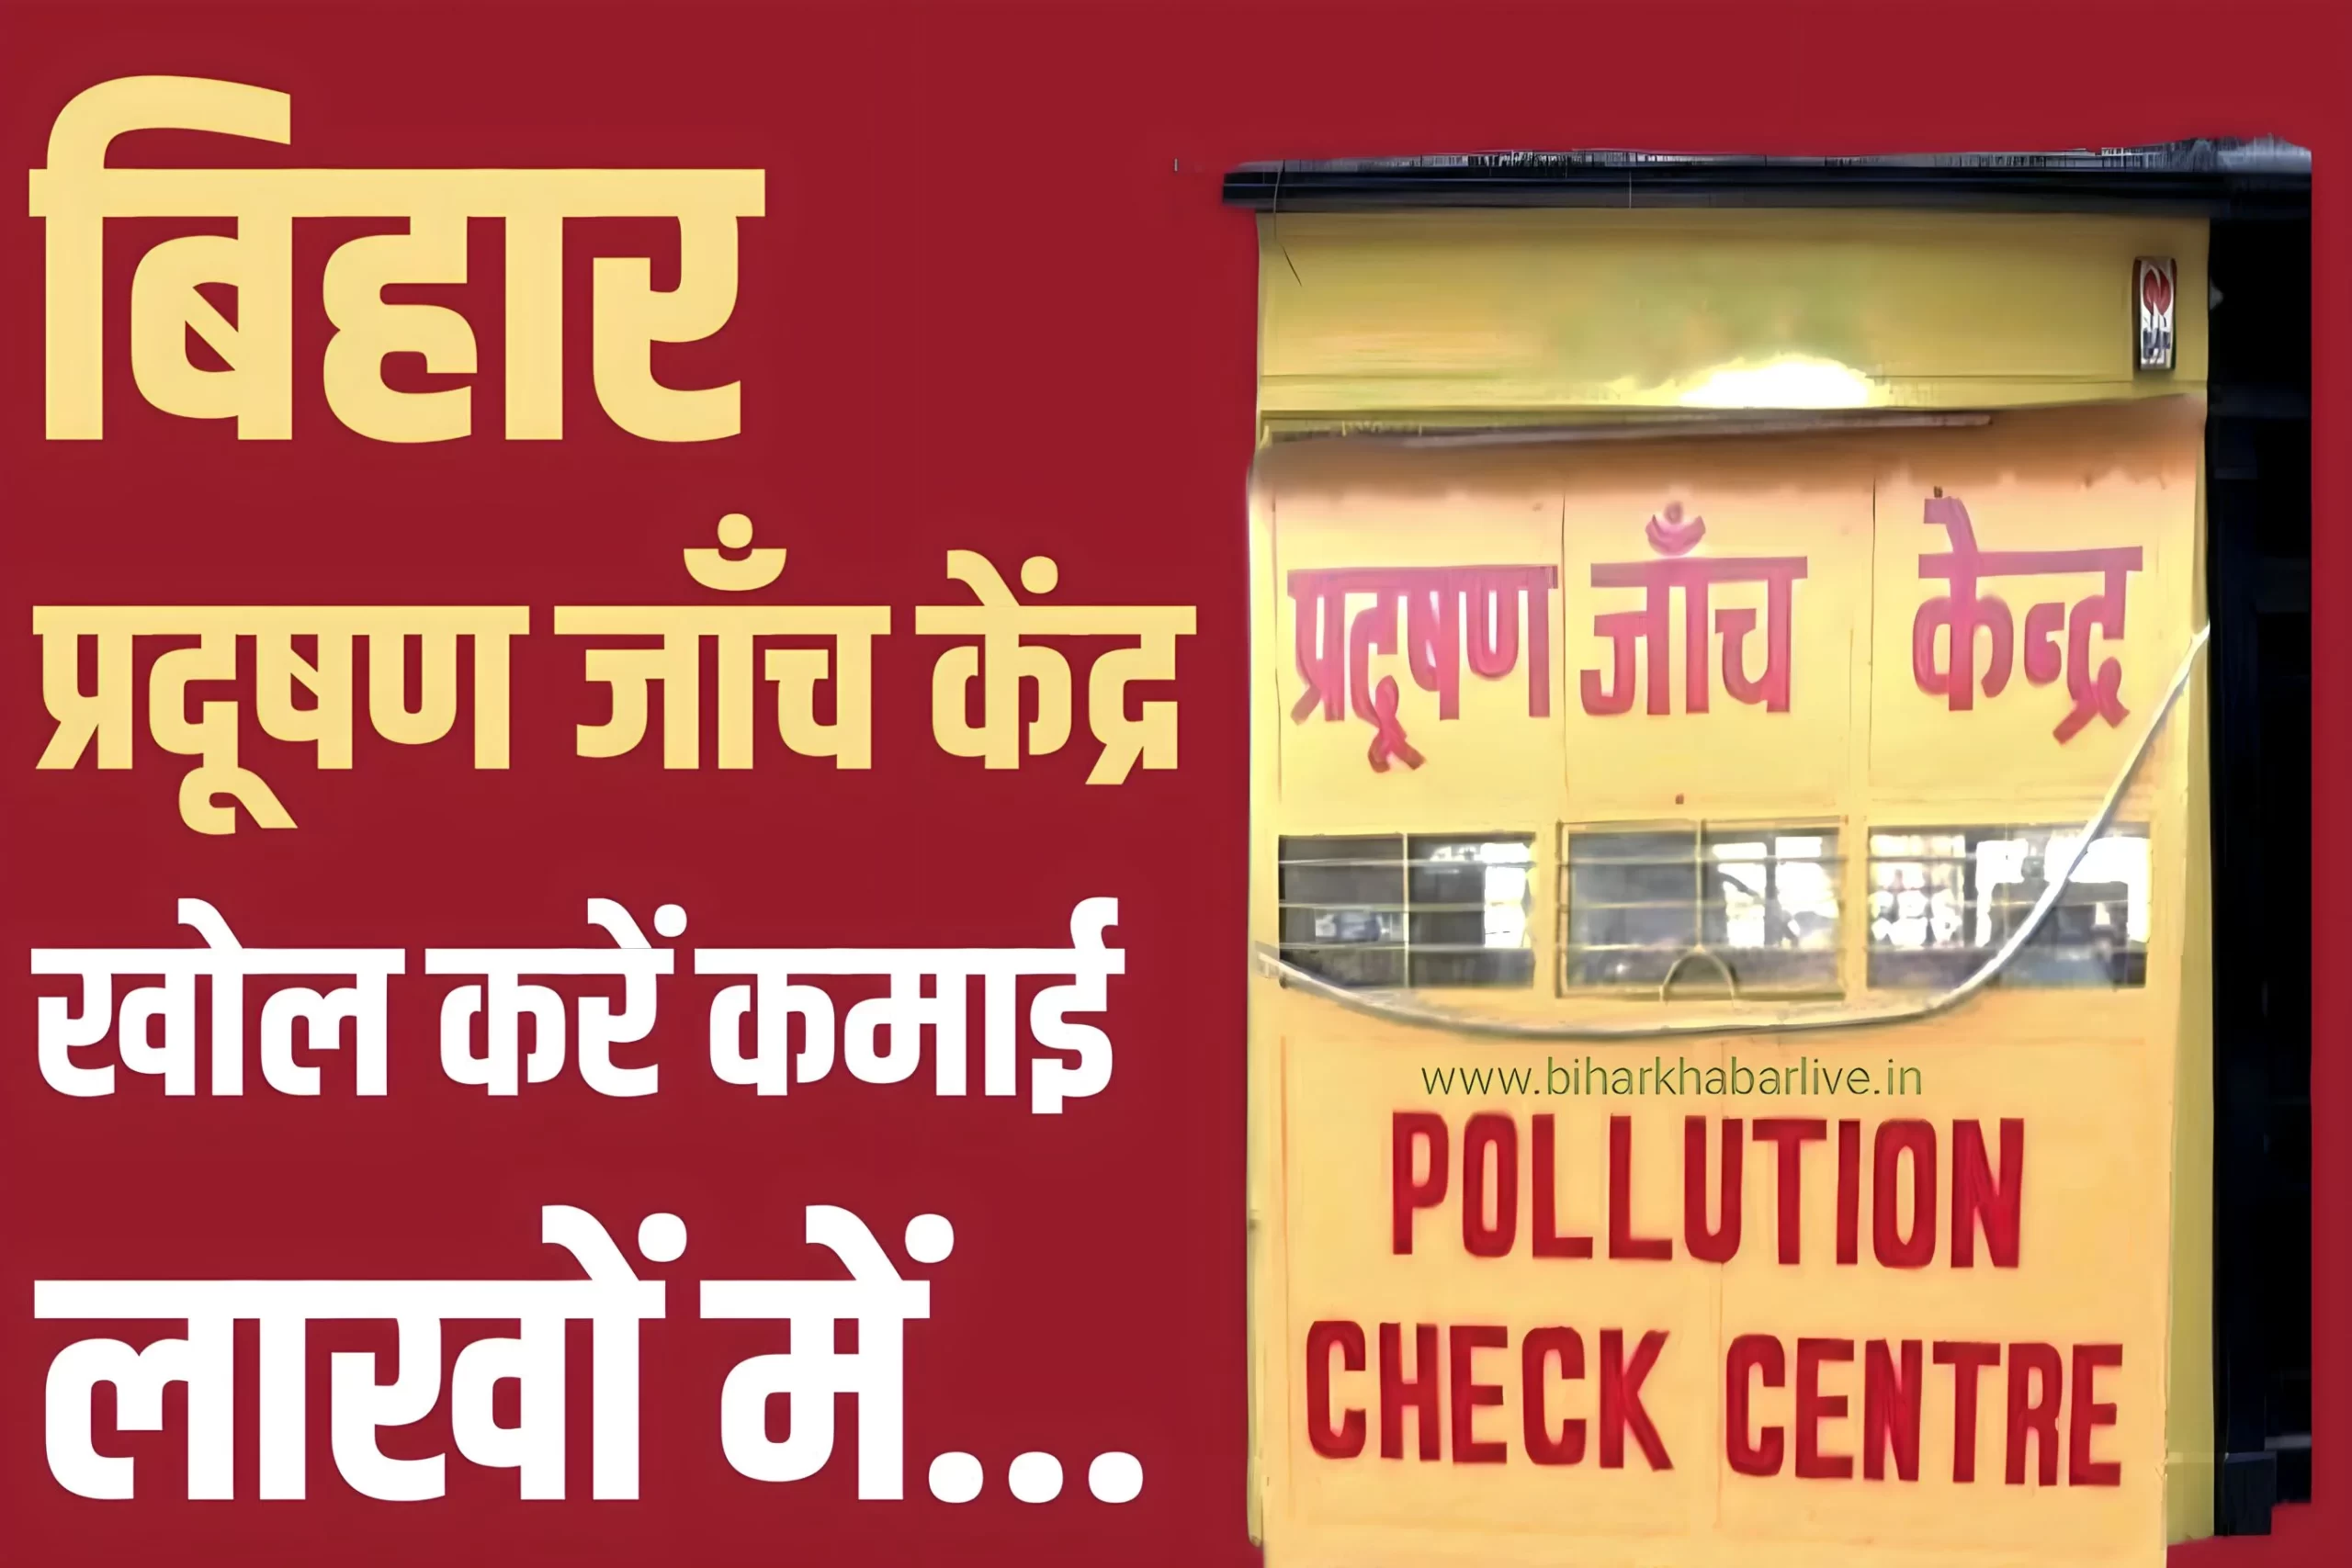 PUC : Pollution Check Centre